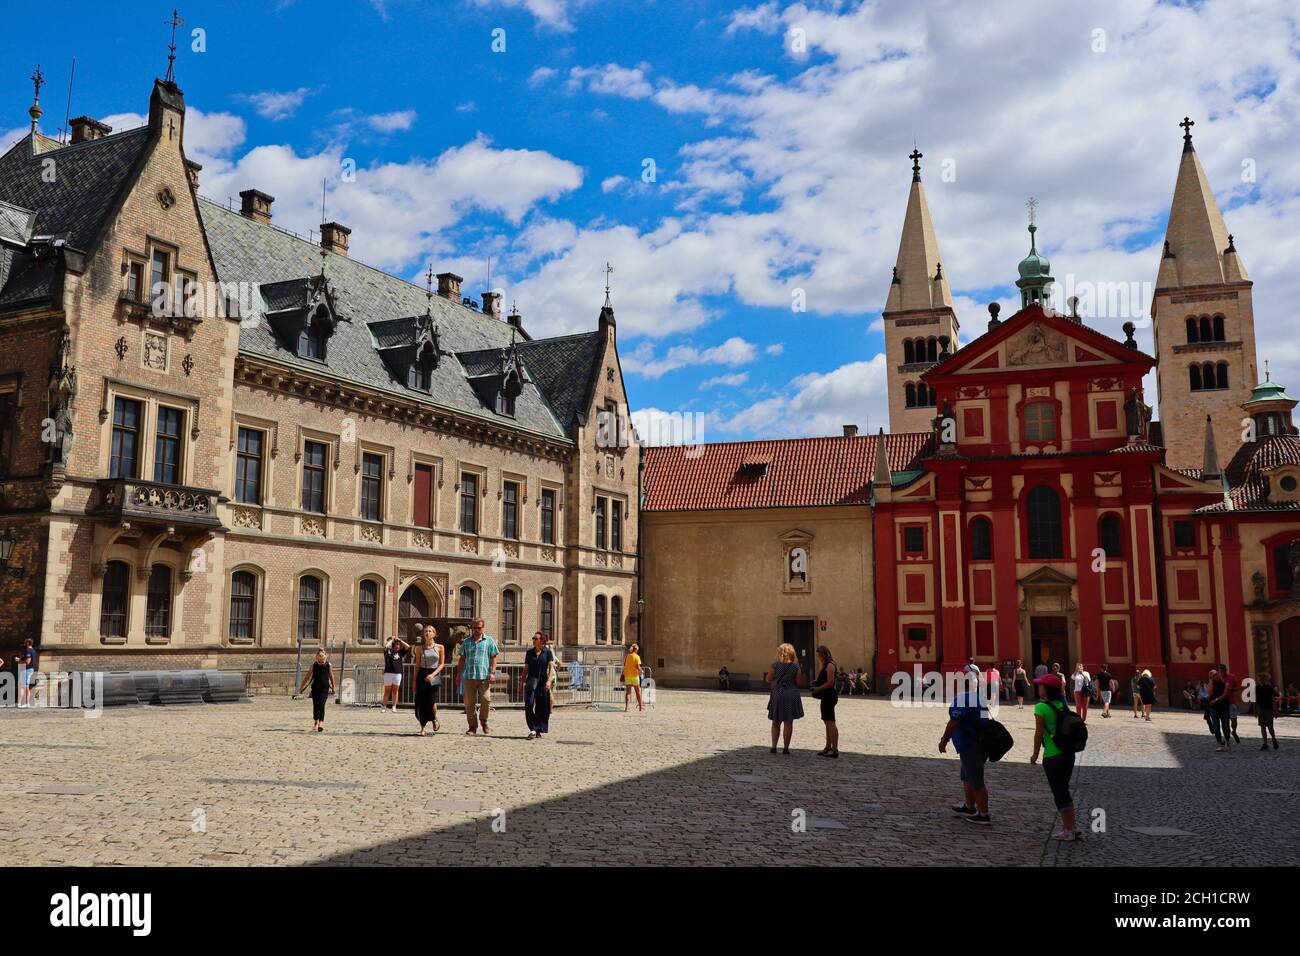 Prag, Tschechische Republik - 5. Juli 2020: St. George's Square befindet sich in der Prager Burg mit den Sehenswürdigkeiten St. George's Basilica und New Provost Residence. Stockfoto